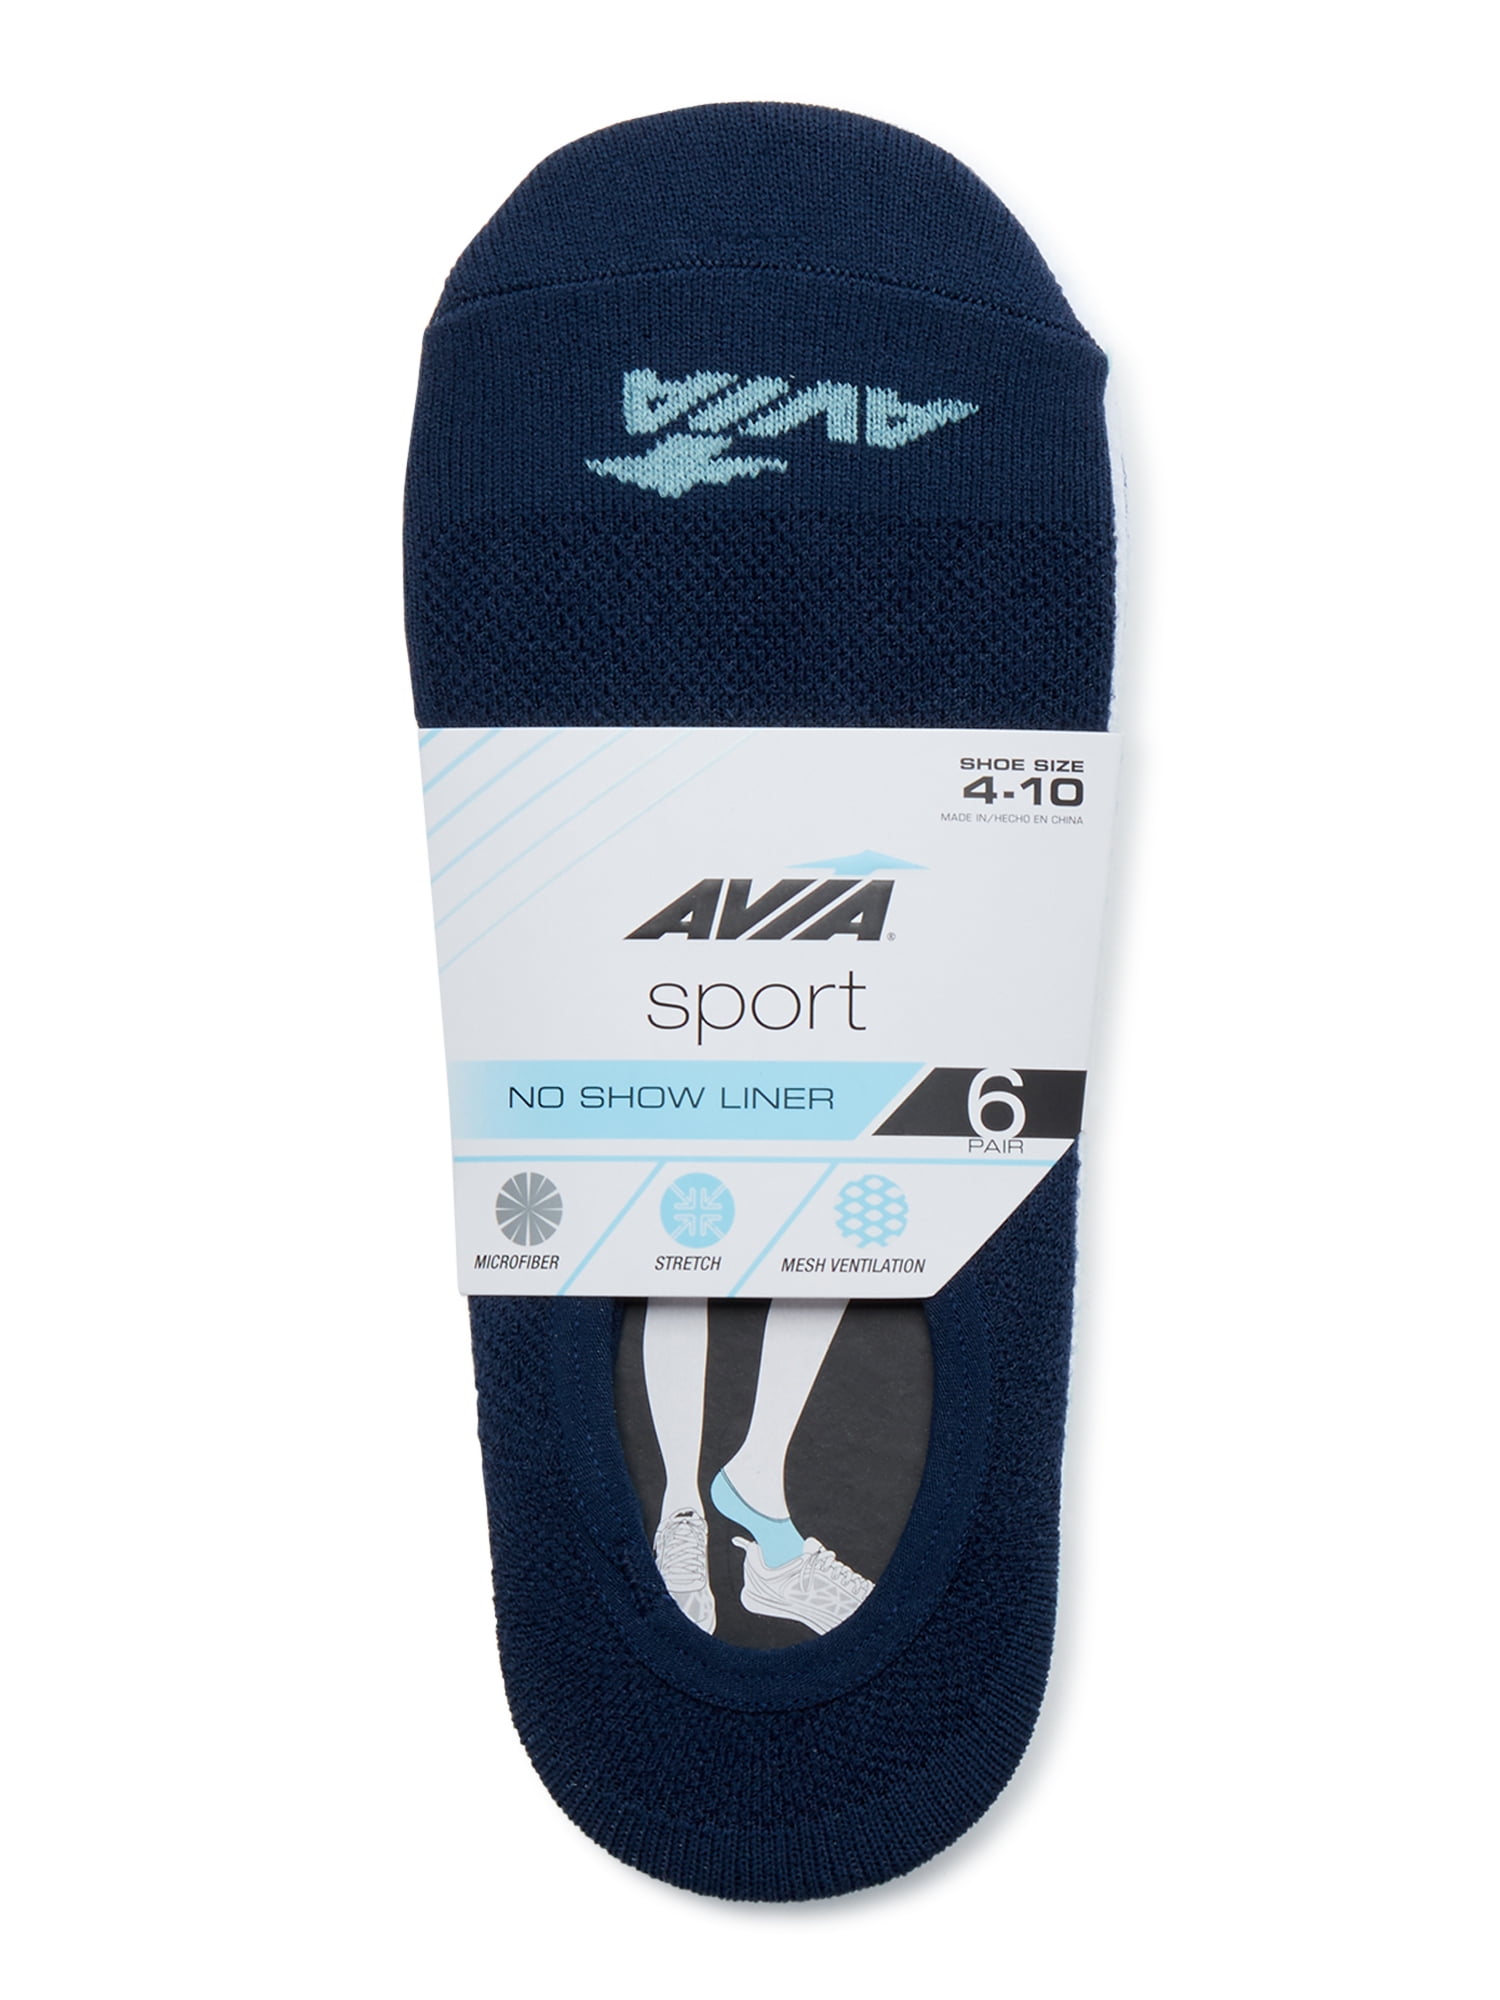 Avia Women's Microfiber Sport No Show Liner Socks, 6 Pack 